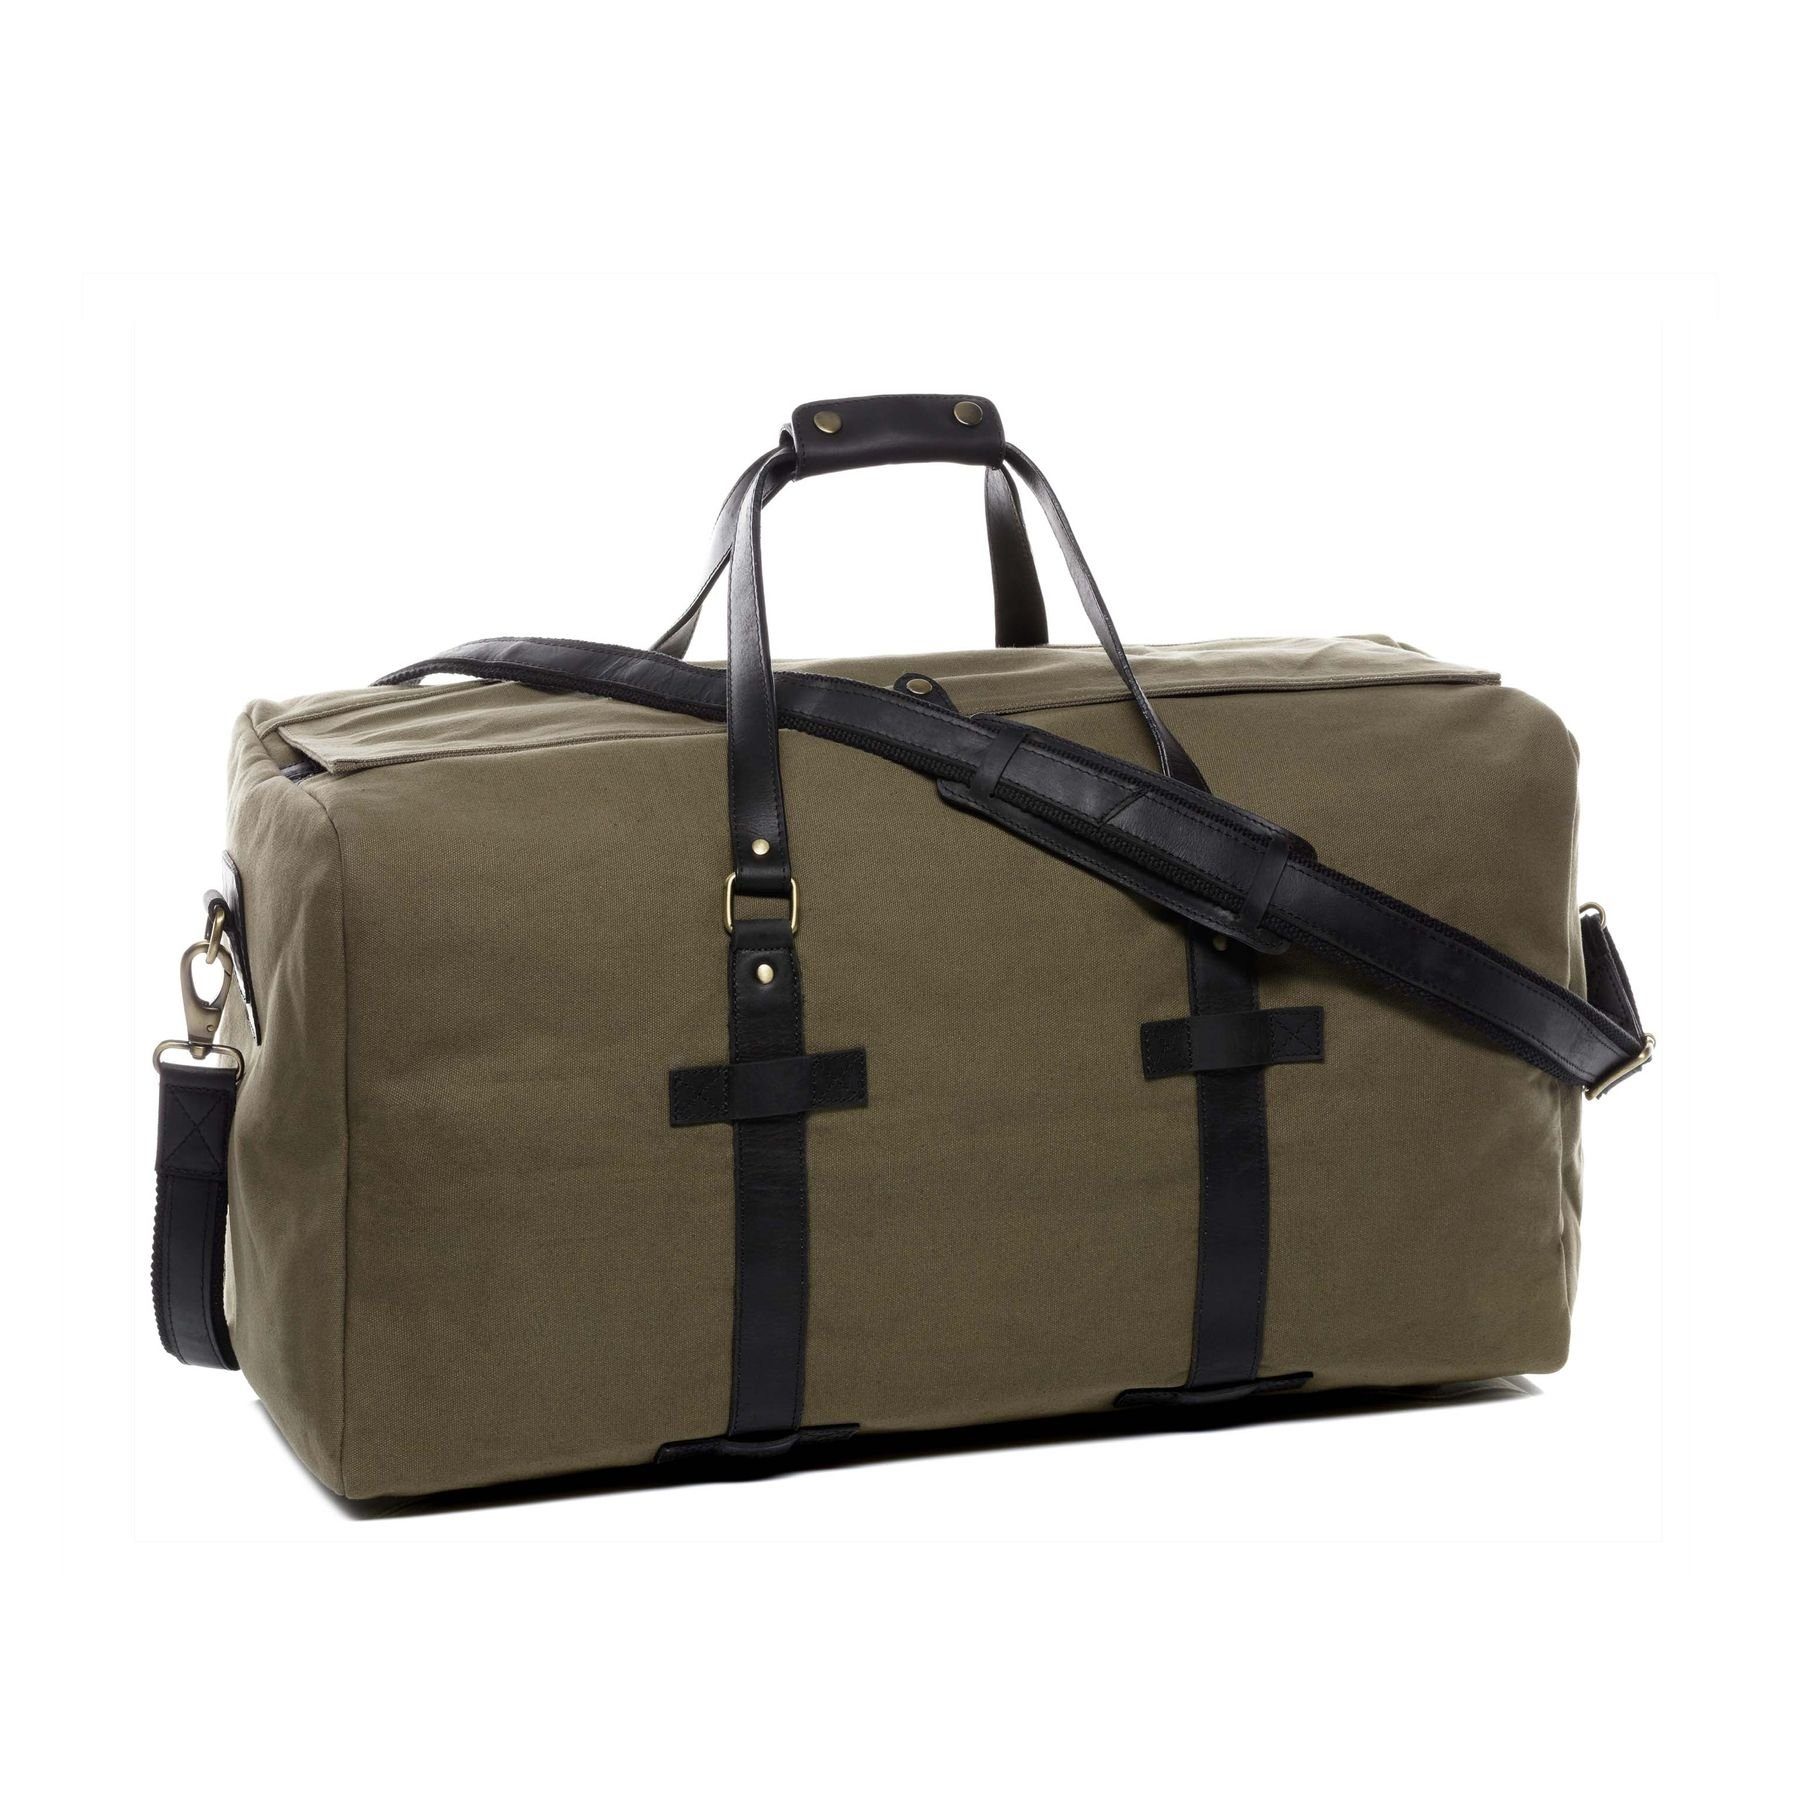 SID & VAIN Reisetasche CHASE, Weekender echt Leder & Canvas Reisetasche  groß XL - Reisegepäck auch als Handgepäck aus stabilem Leder - Sporttasche,  Freizeittasche mit Umhängegurt - Ledertasche Herren Damen grün-braun